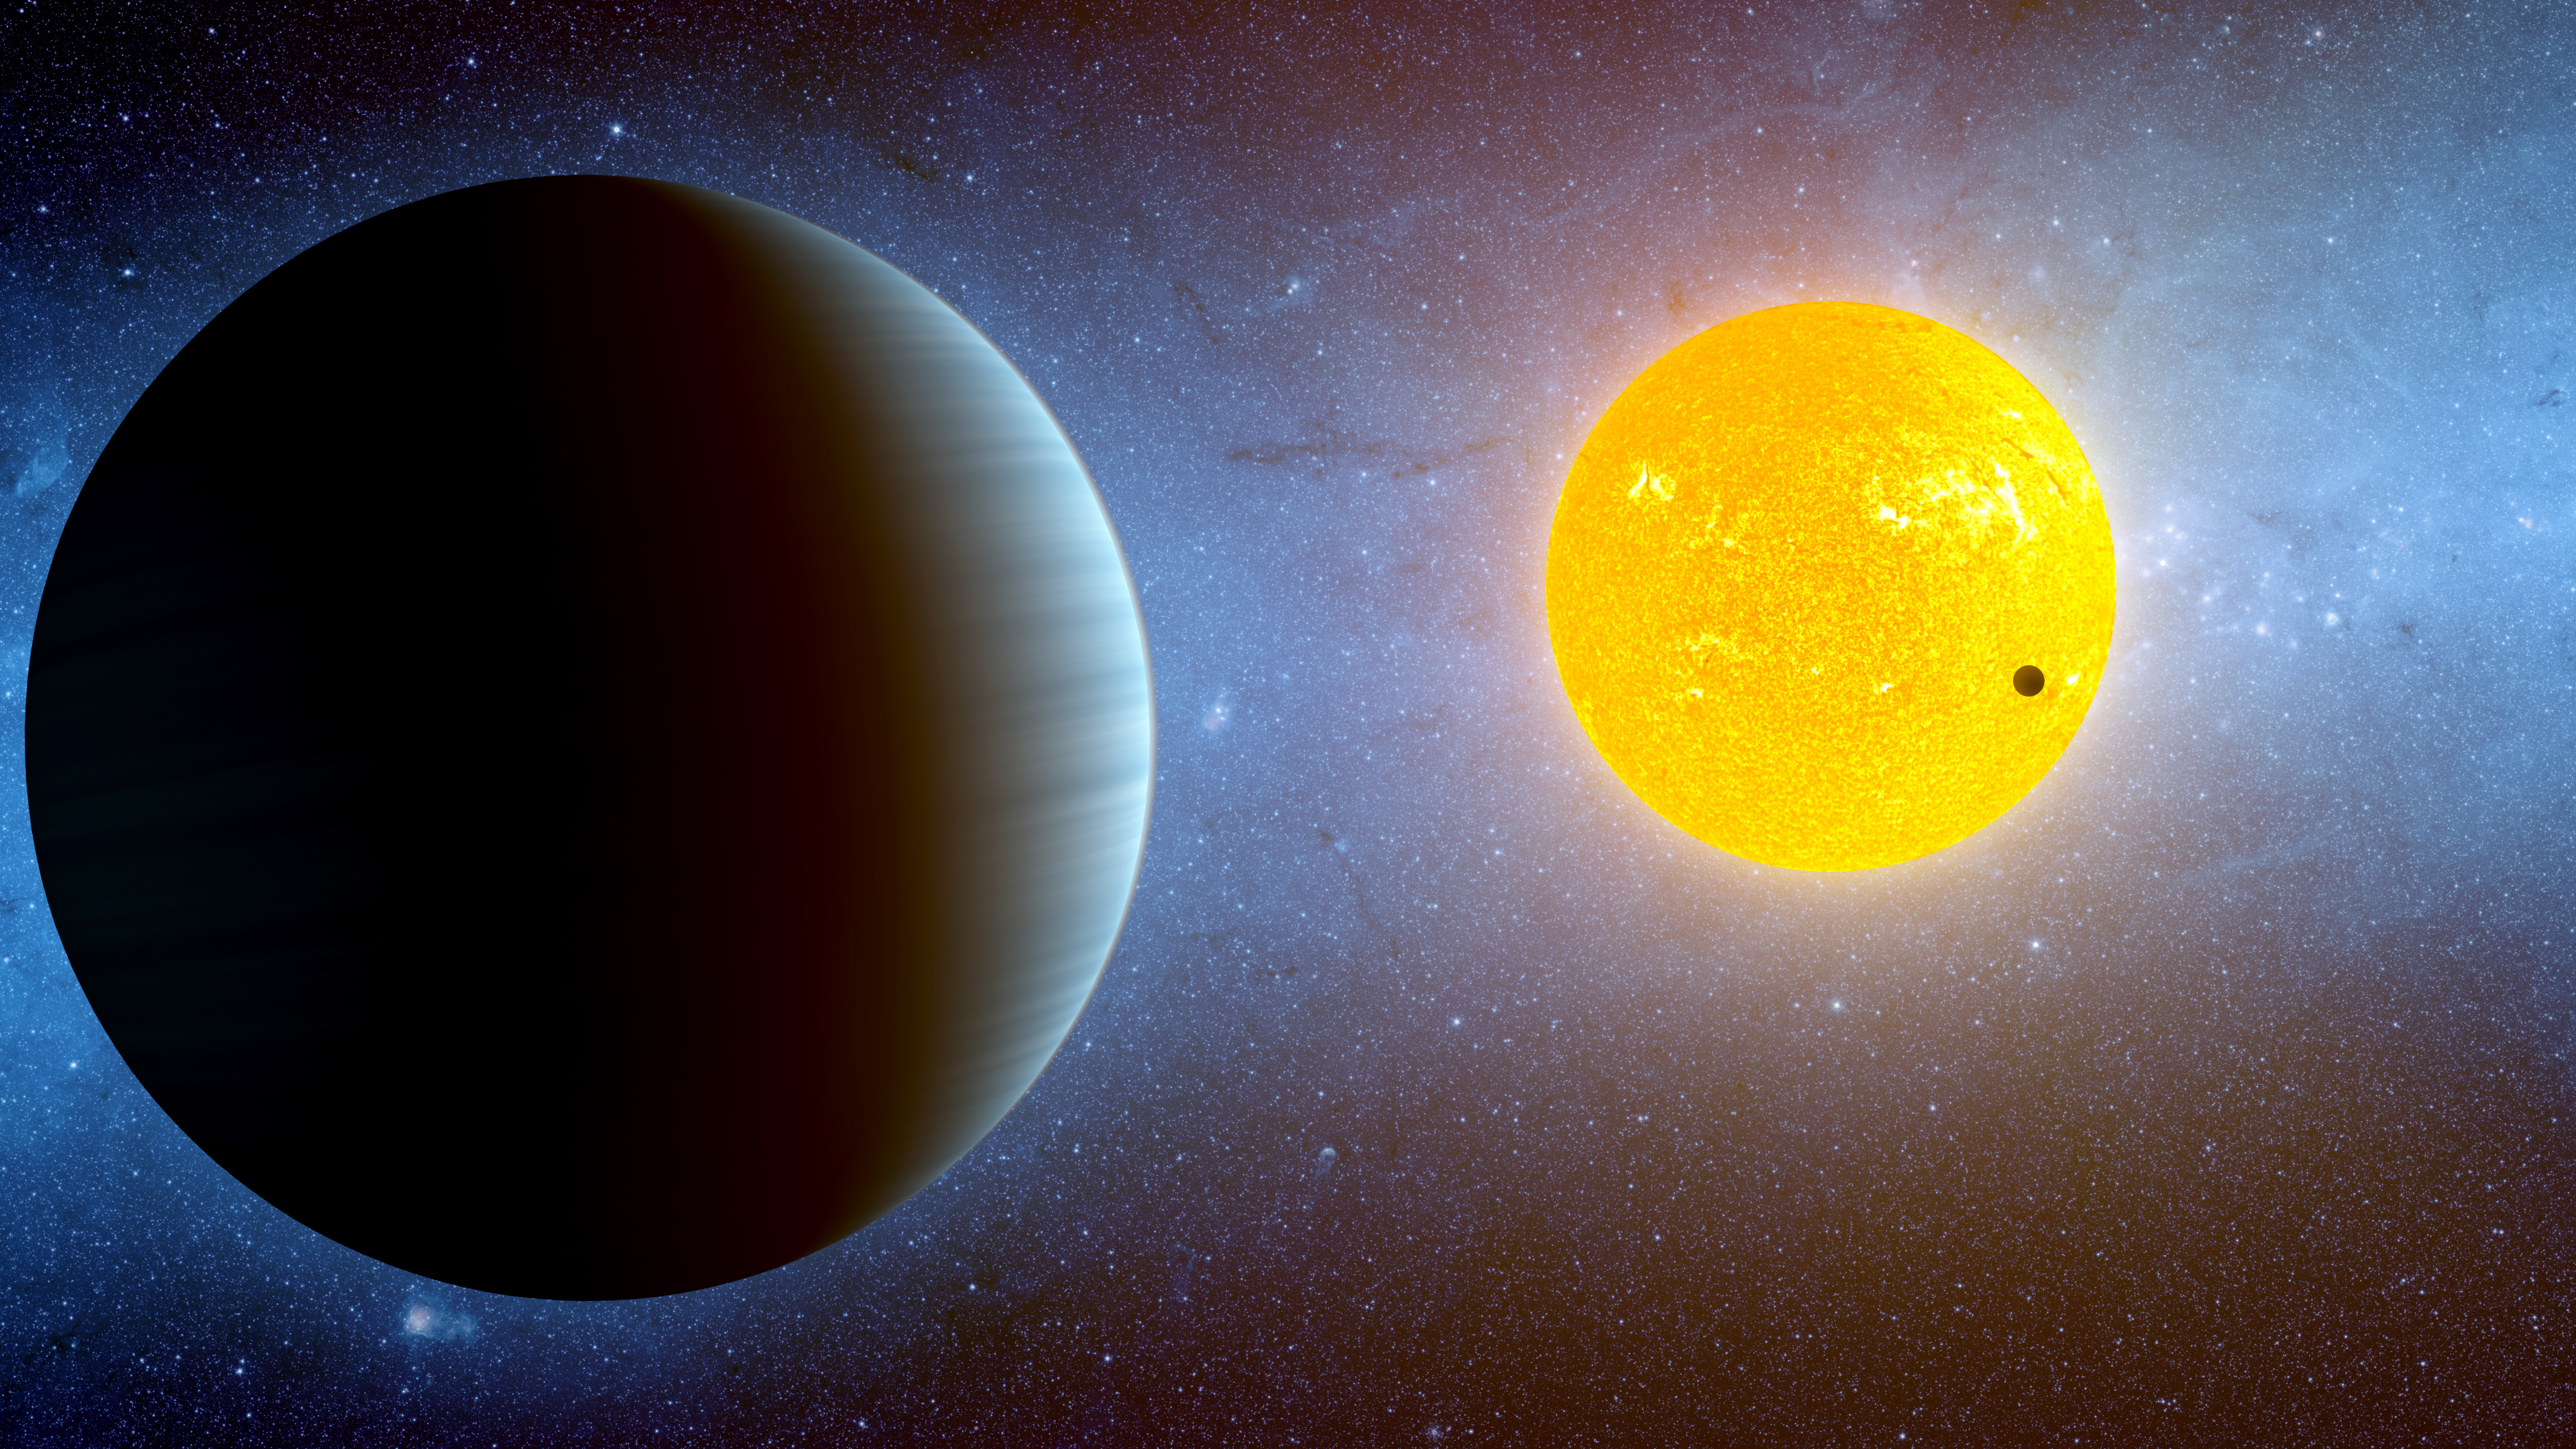 Al igual que Kepler-10 b, ilustrado arriba, el exoplaneta HD 63433 d es un planeta pequeño y rocoso en una órbita estrecha de su estrella. HD 63433 d es el exoplaneta más pequeño confirmado de menos de 500 millones de años. También es el planeta descubierto más cercano del tamaño de la Tierra tan joven, con unos 400 millones de años.